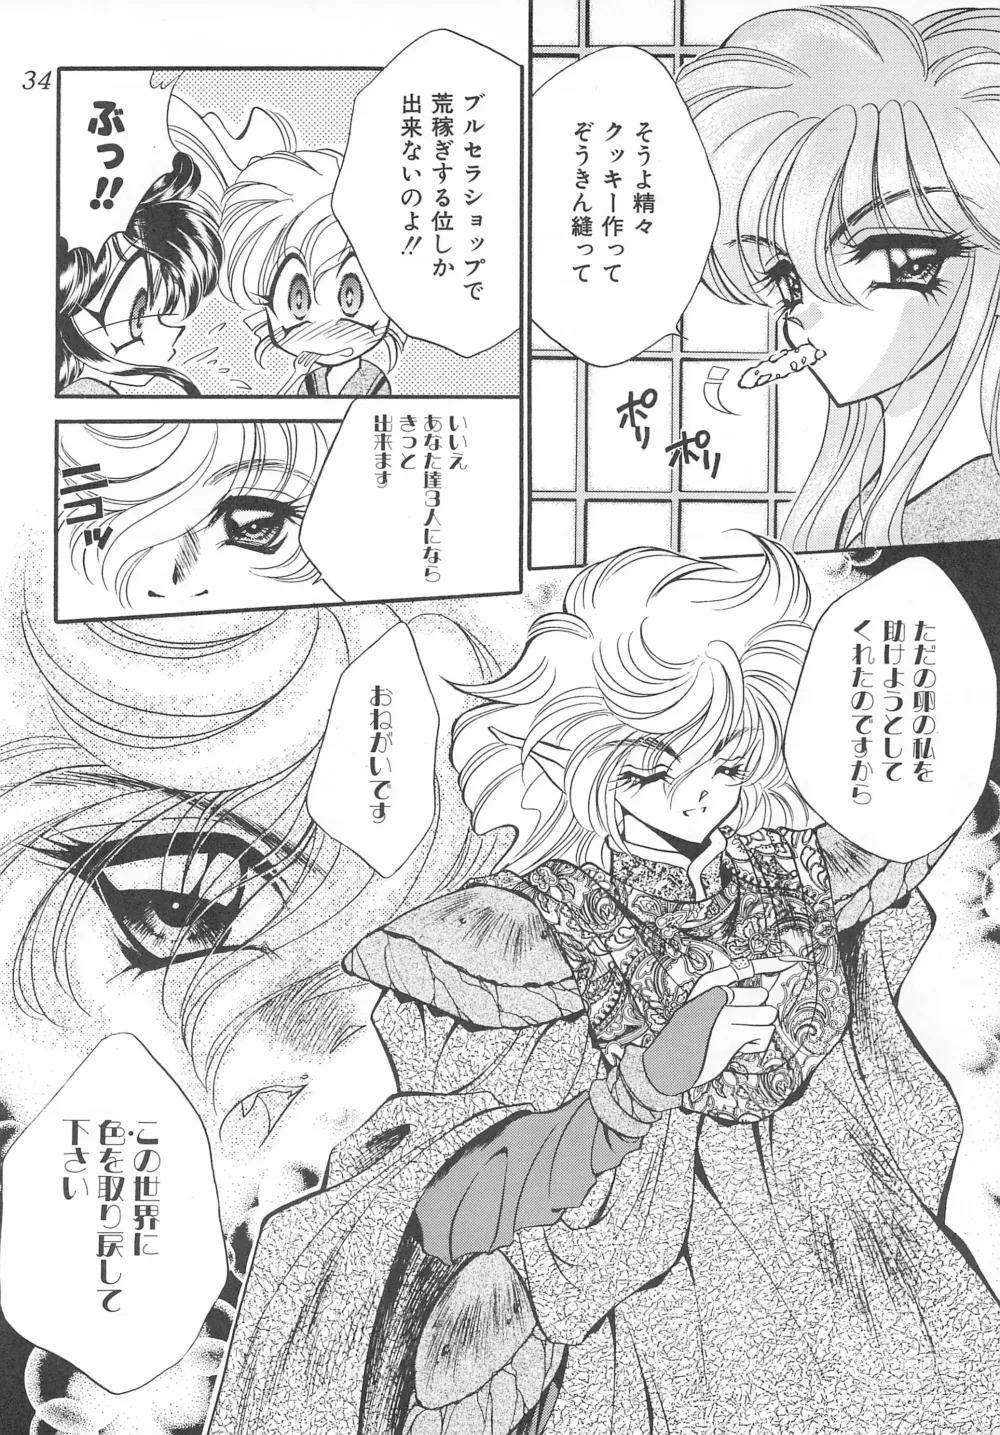 Page 34 of doujinshi MAX 6